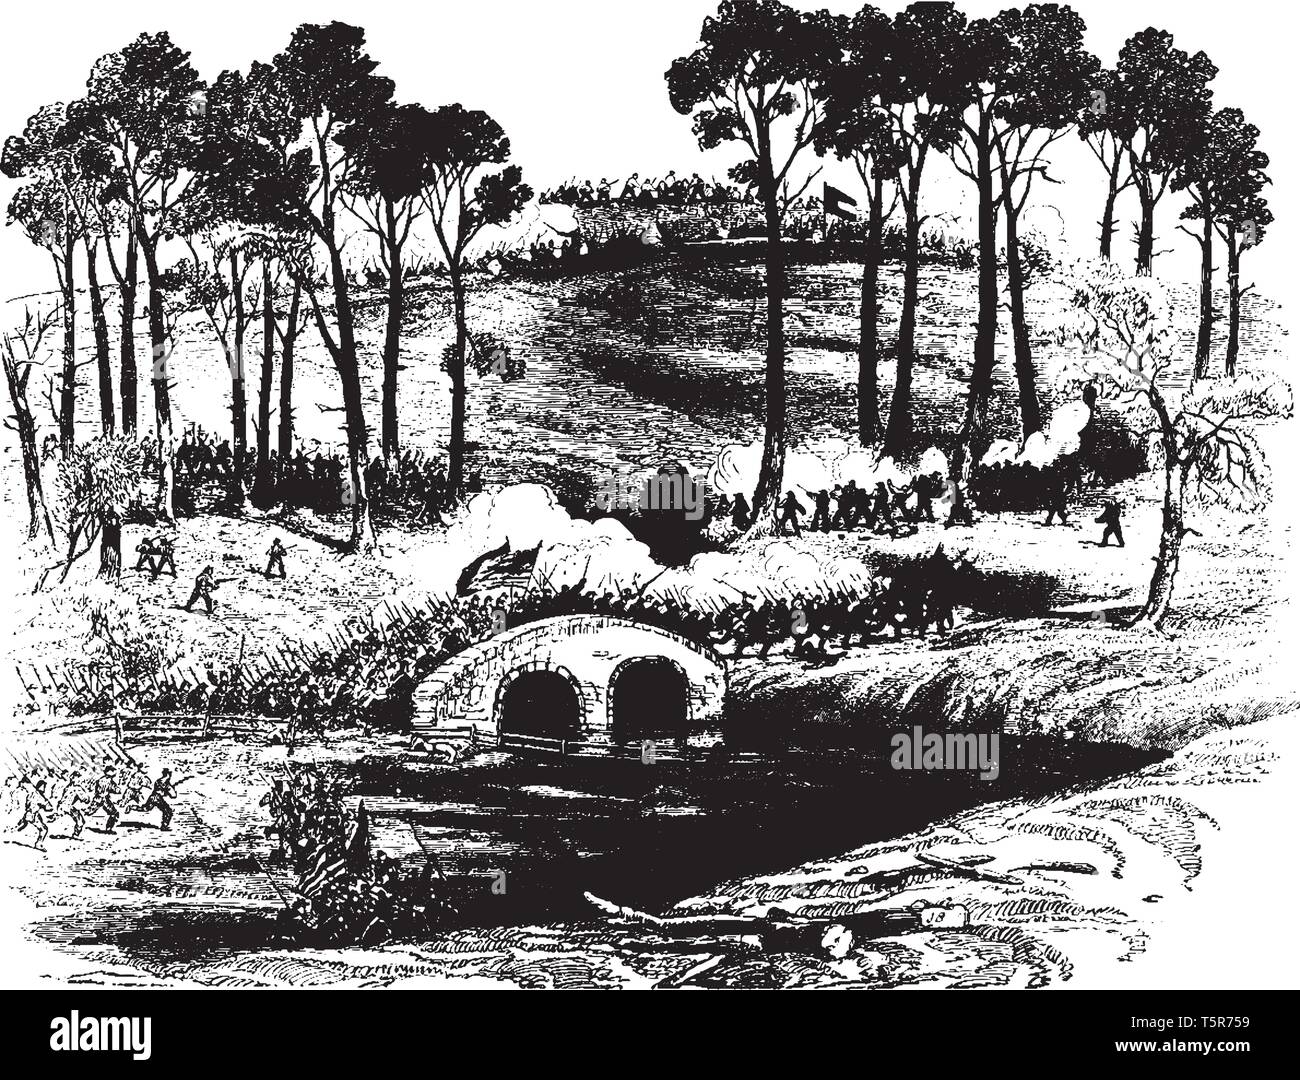 Bataille d'Antietam, également connu sous le nom de la bataille de Sharpsburg en particulier dans le sud des États-Unis, le dessin des lignes vintage ou gravure illustration. Illustration de Vecteur